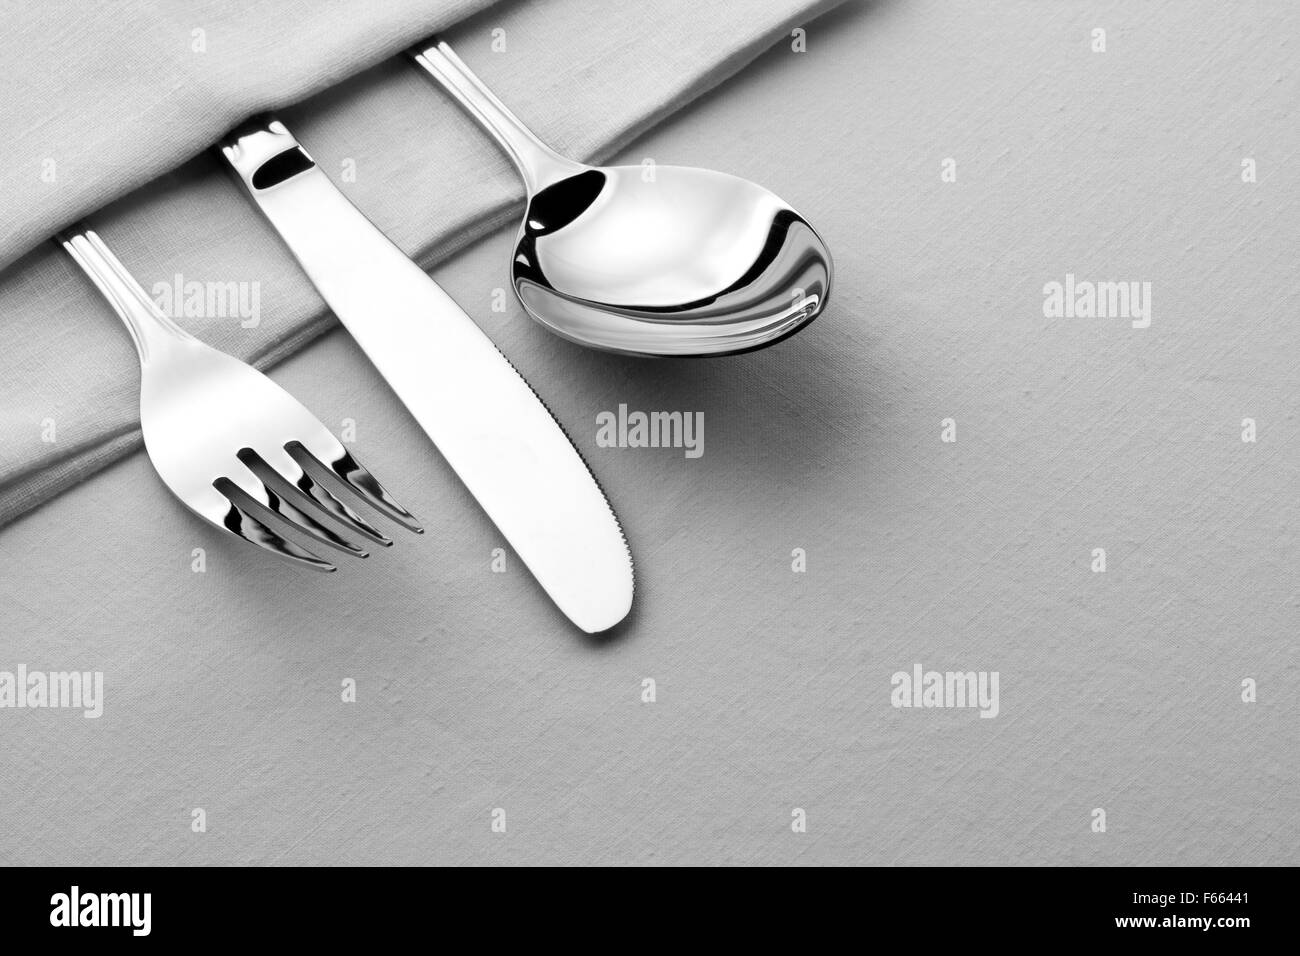 Forcella, un cucchiaio e un coltello sul tavolo Foto Stock